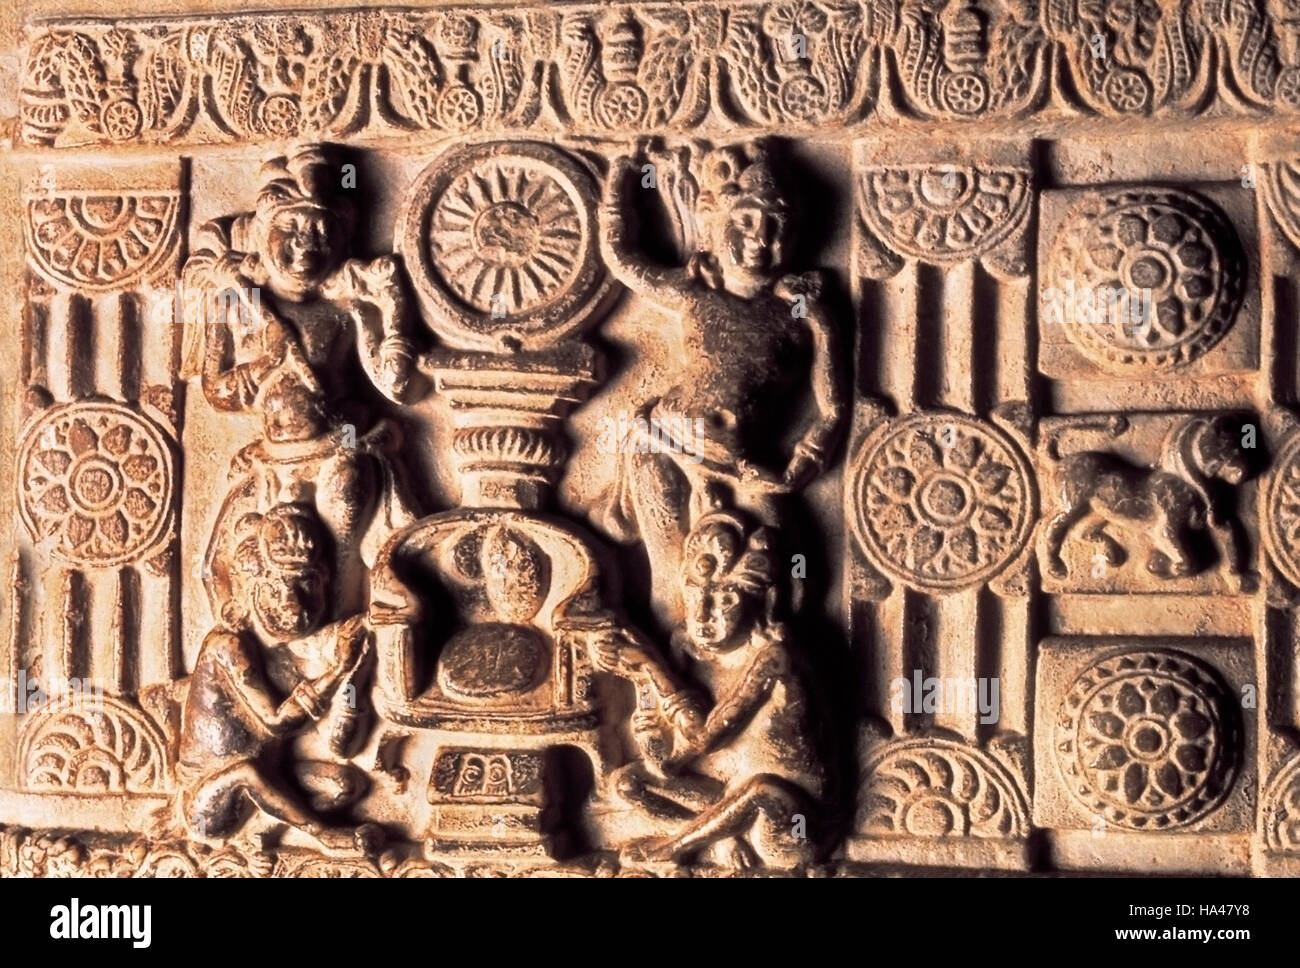 Amaravati stupa, il culto del trono con la ruota. India, I secolo A.C. Foto Stock